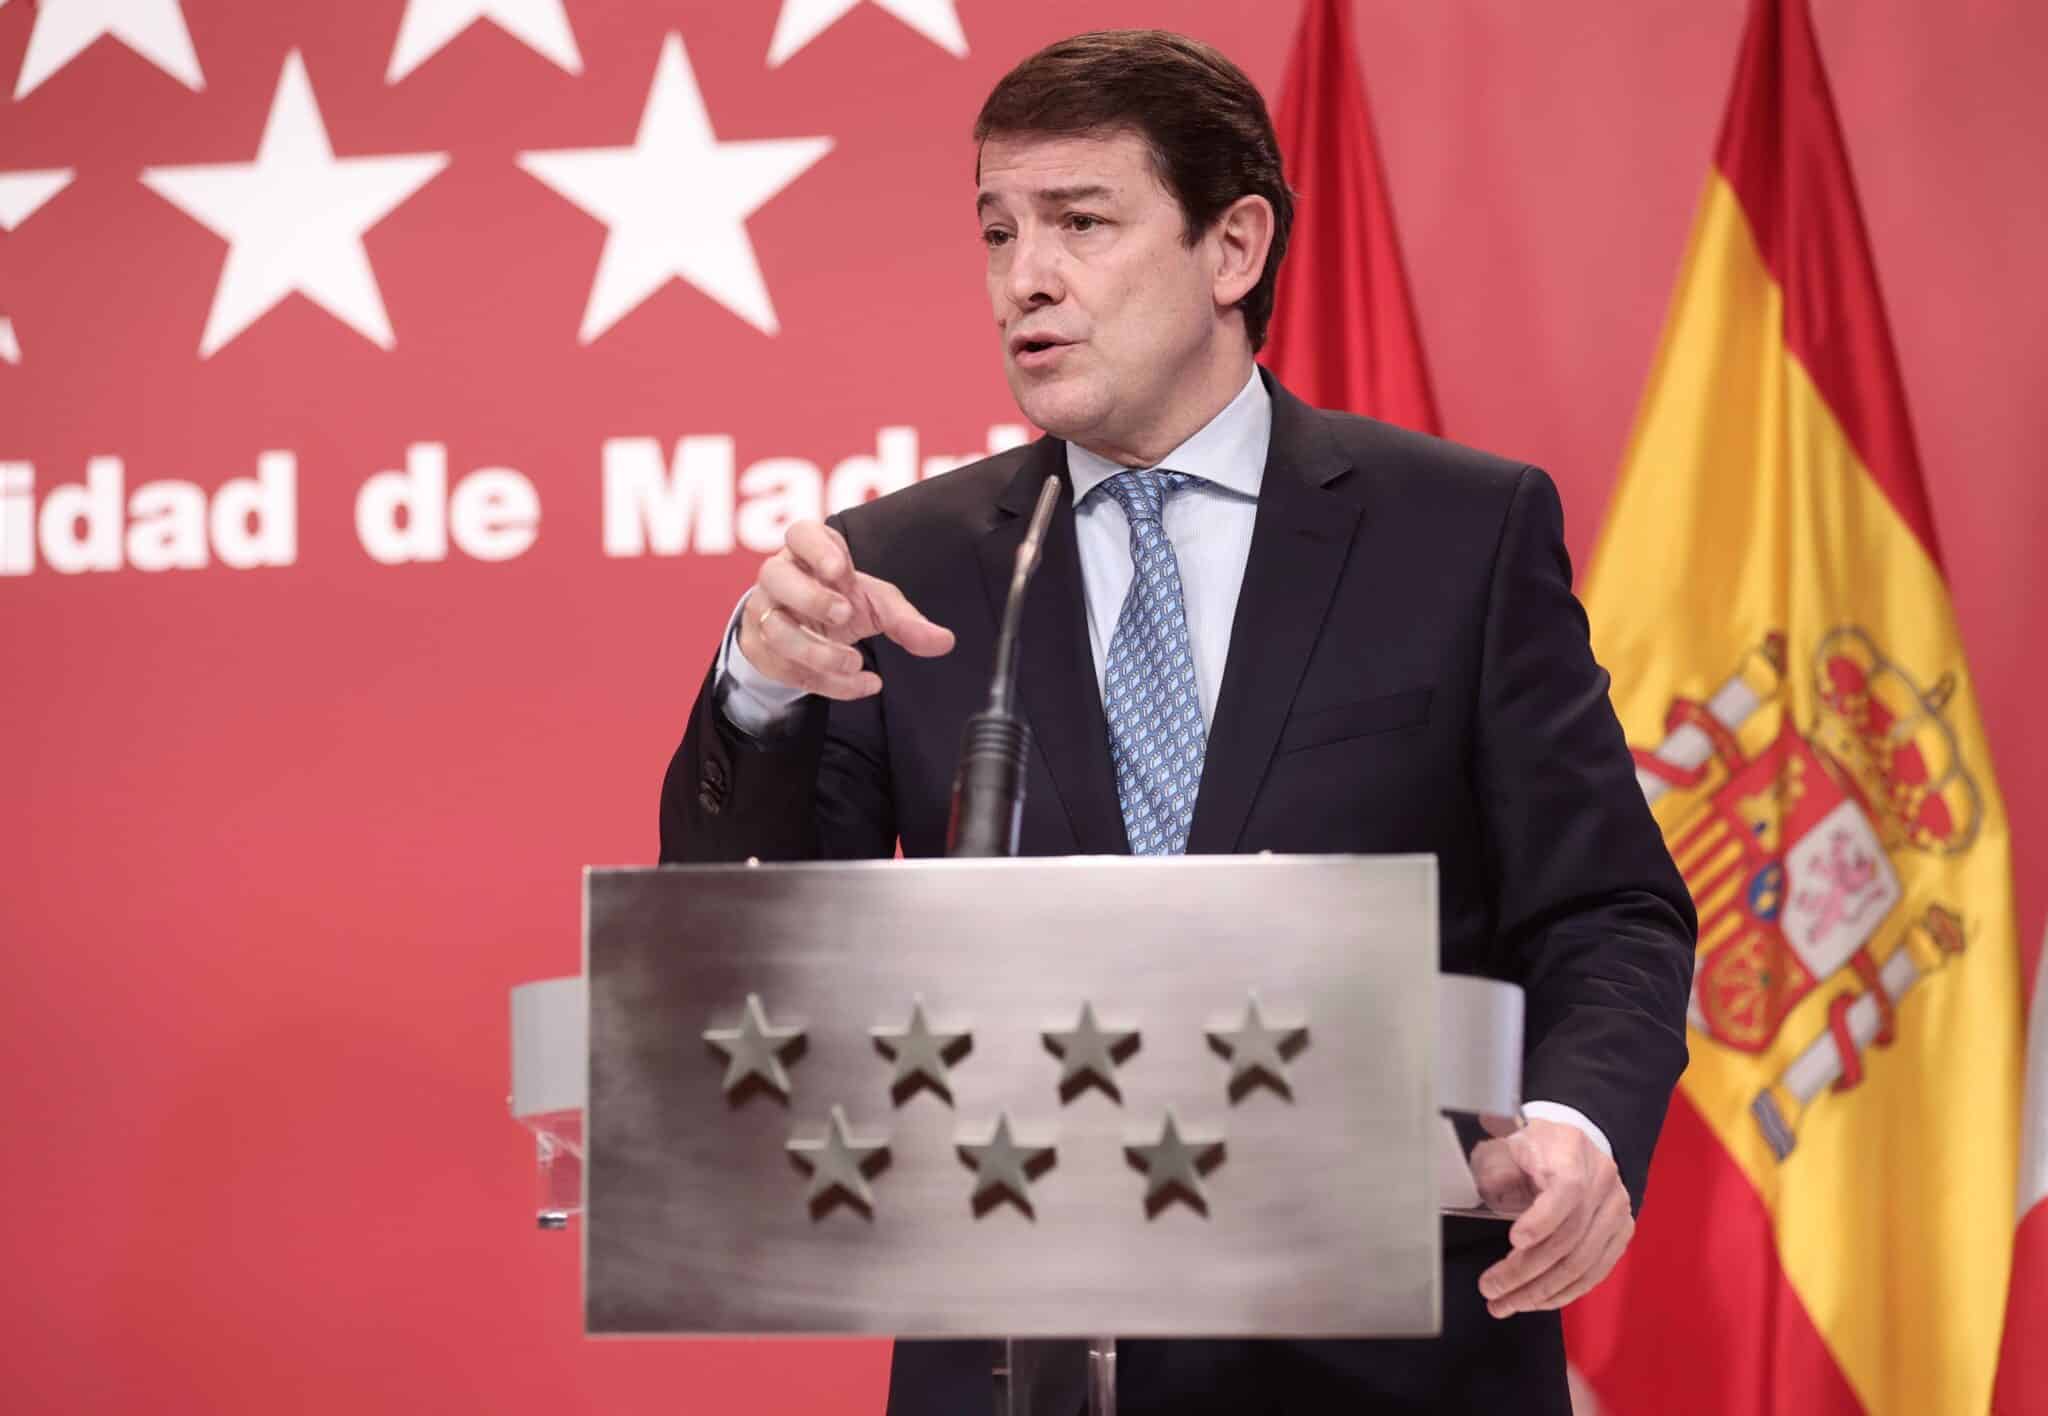 El presidente de la Junta de Castilla y León, Alfonso Fernández Mañueco, en una rueda de prensa después de una reunión con la presidenta de la Comunidad de Madrid, en la Real Casa de Correos